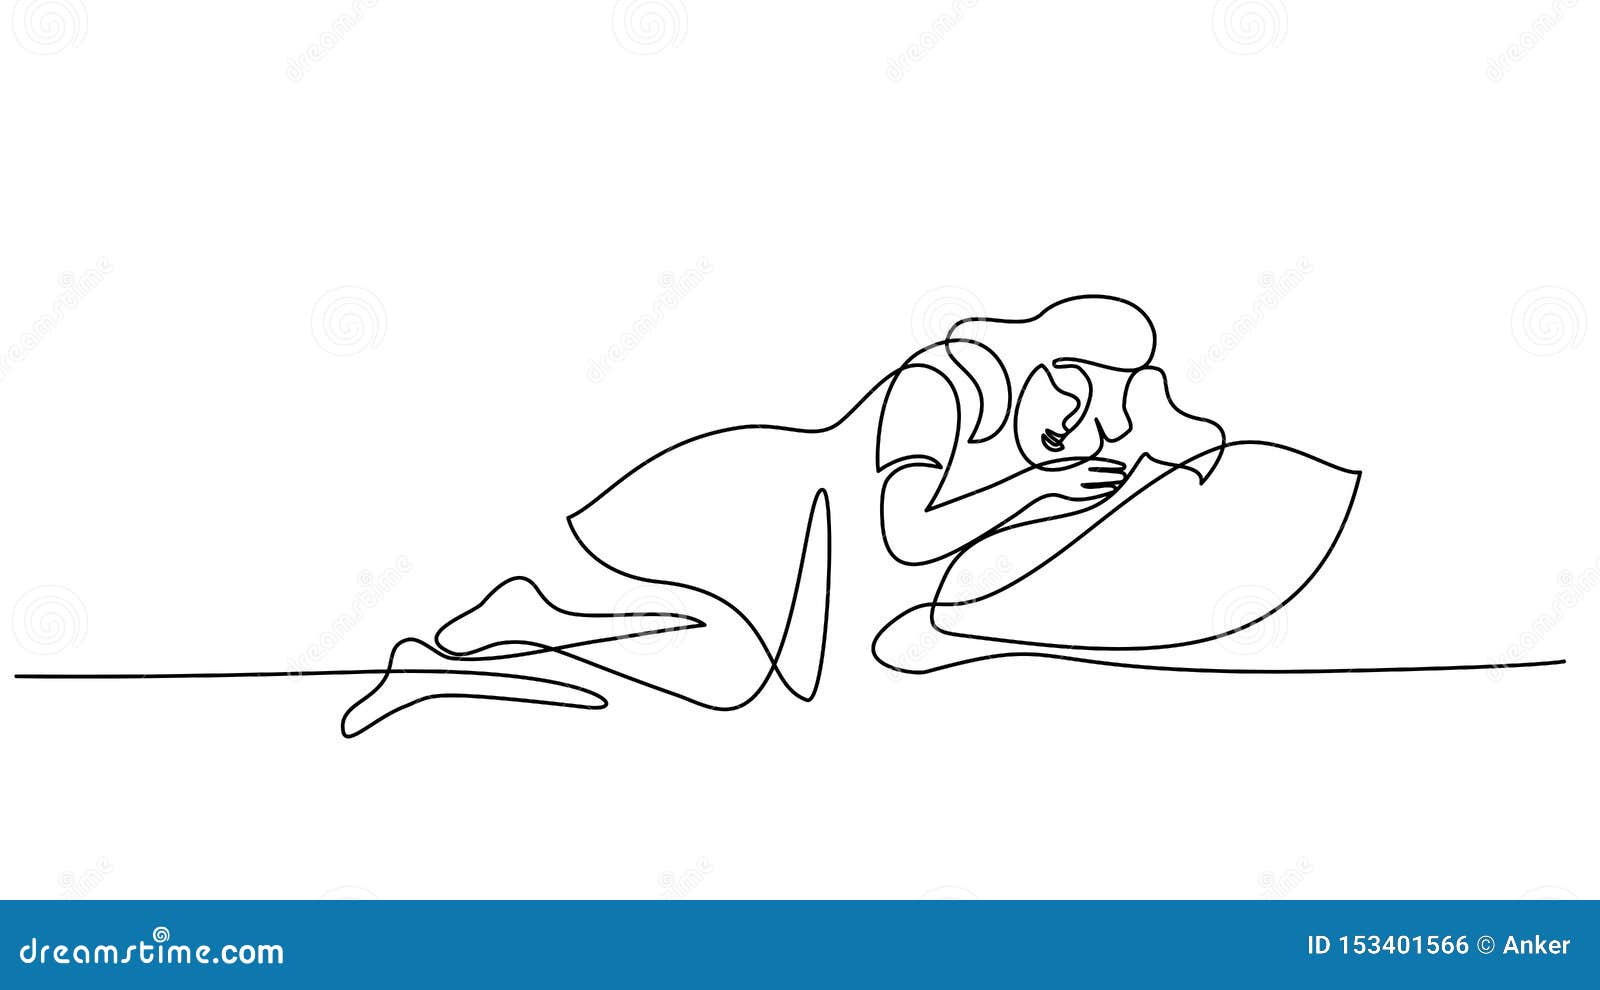 Guy on pillow sleeps cartoon sleeping man drawing Vector Image